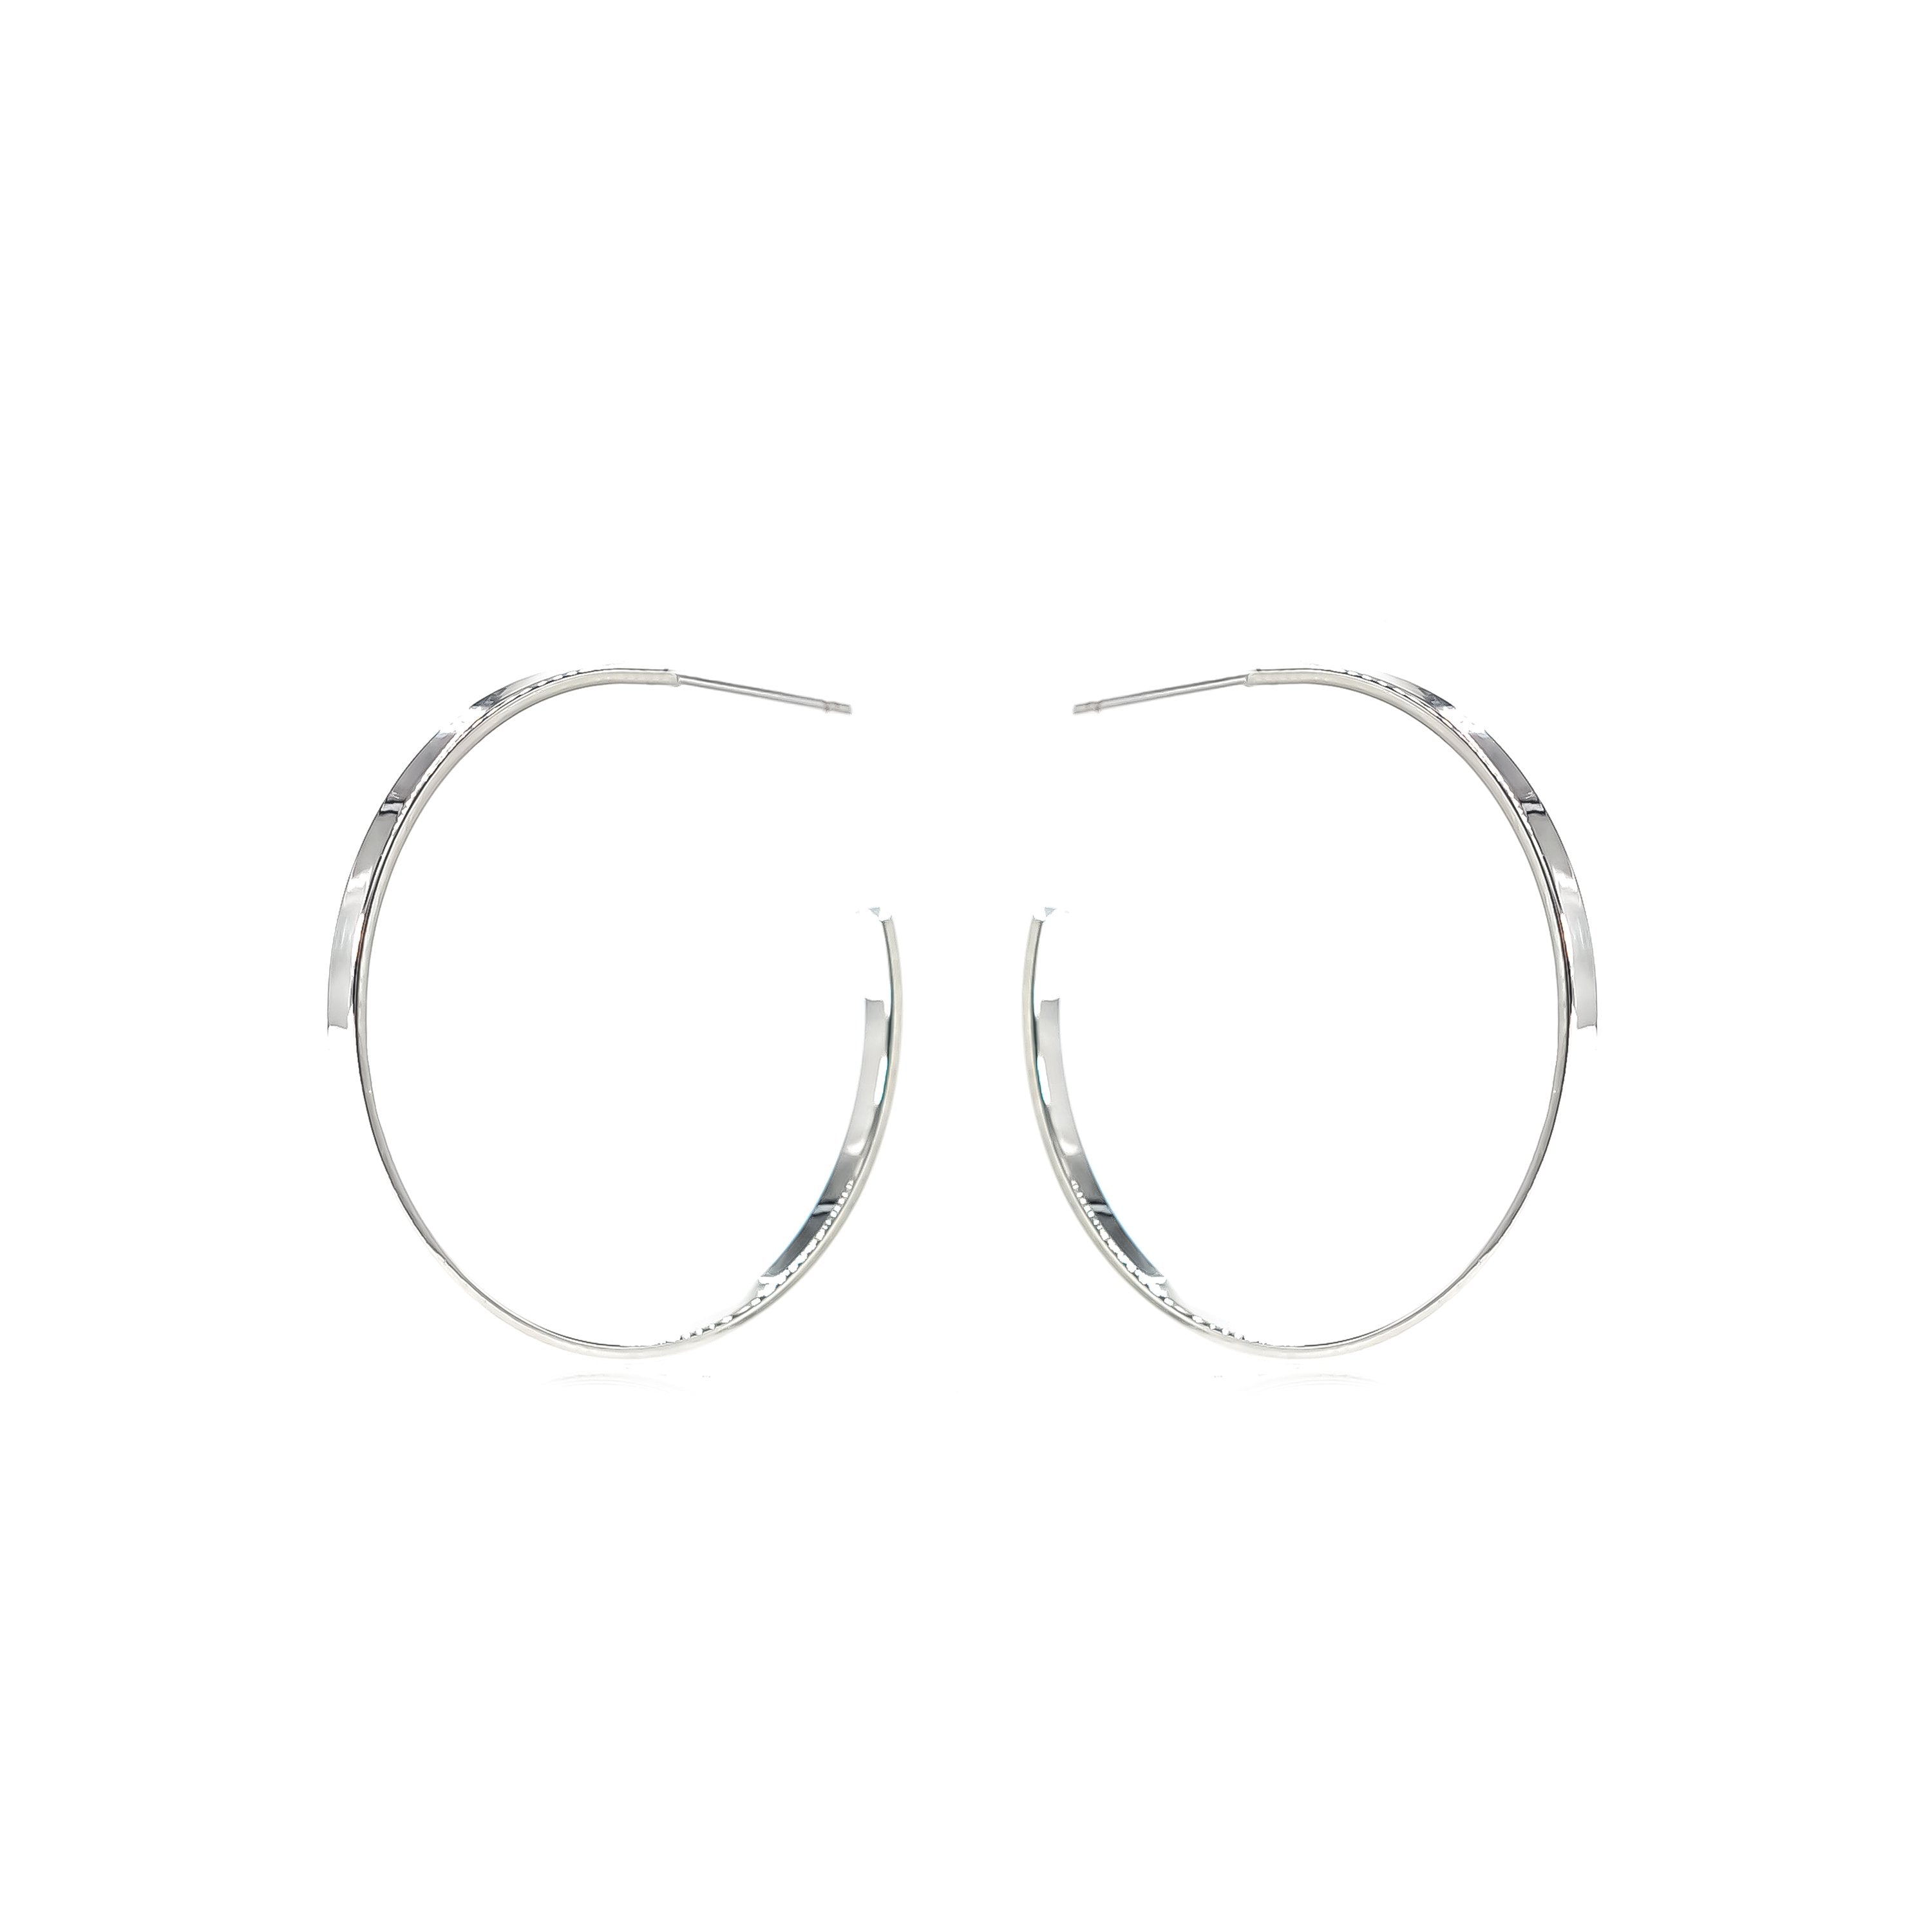 E&E Earrings - Silver "Classic" Hoops 2.0